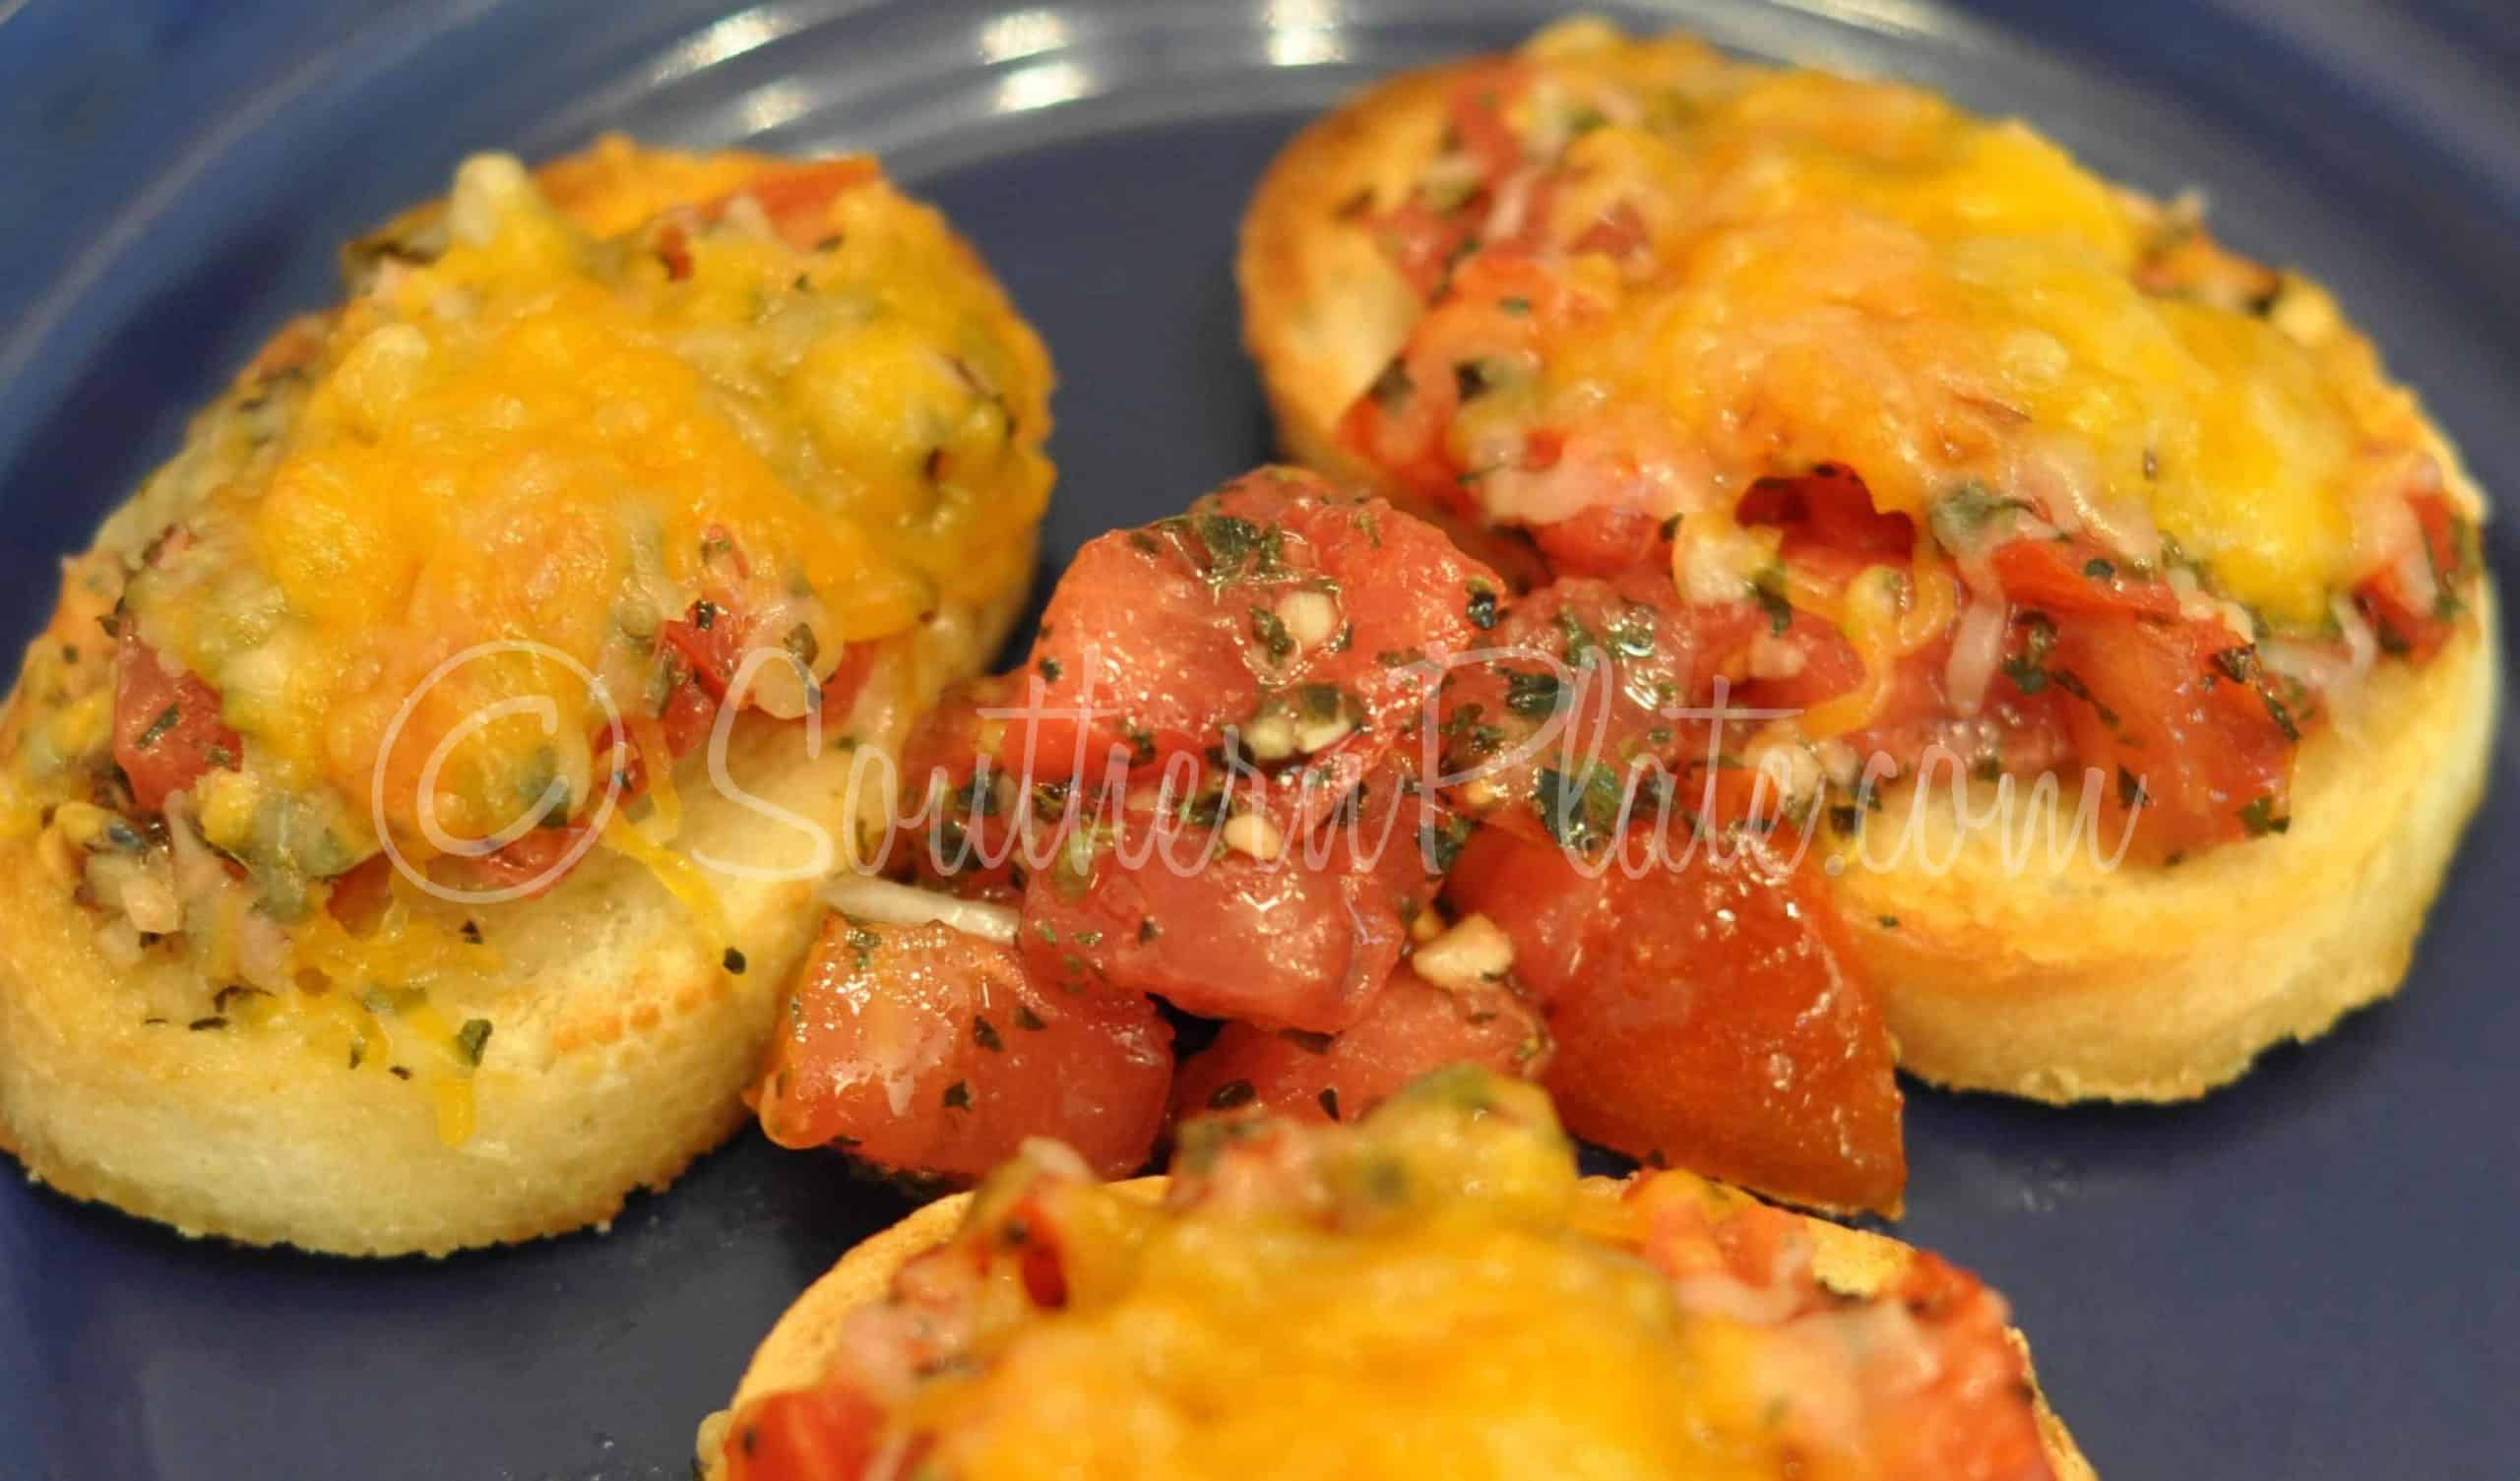 Bruschetta (Tomato Stuff On Bread)